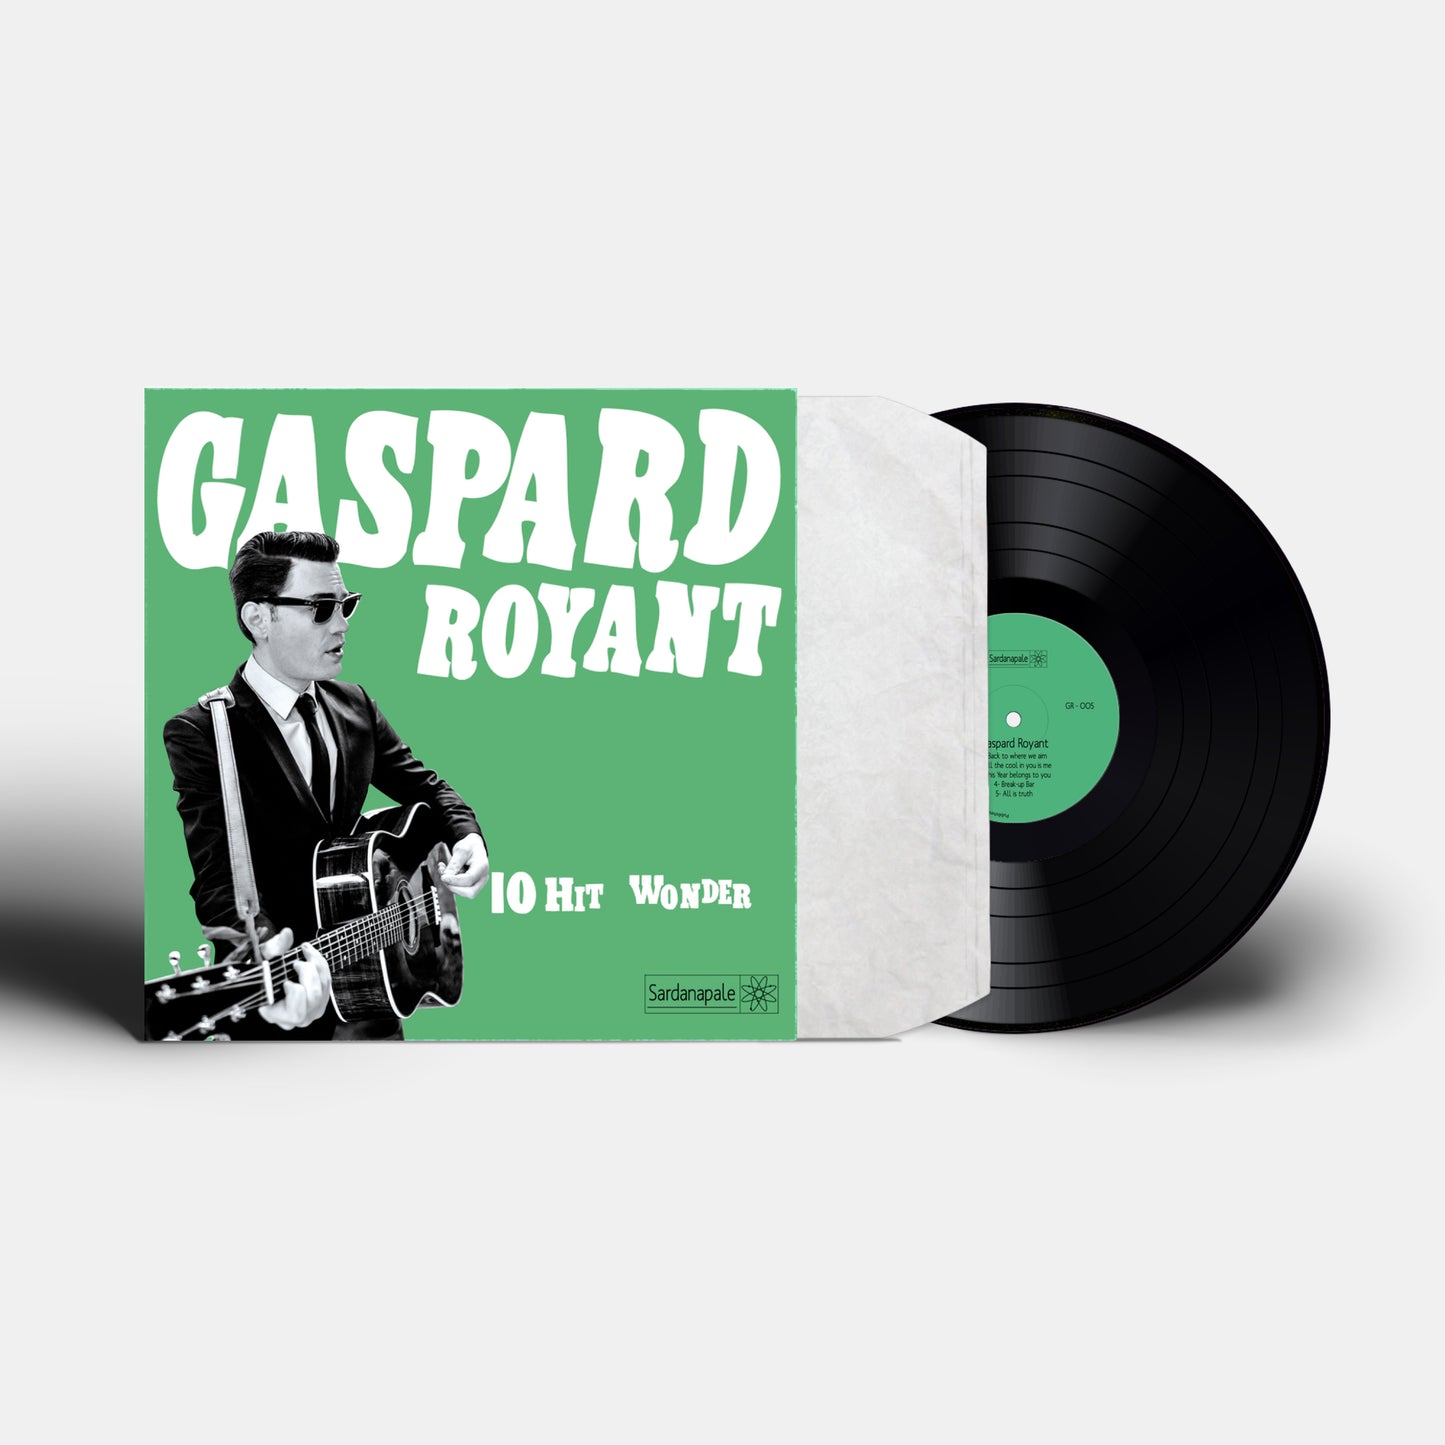 GASPARD ROYANT " 10 Hit Wonder" - Format vinyle 33T